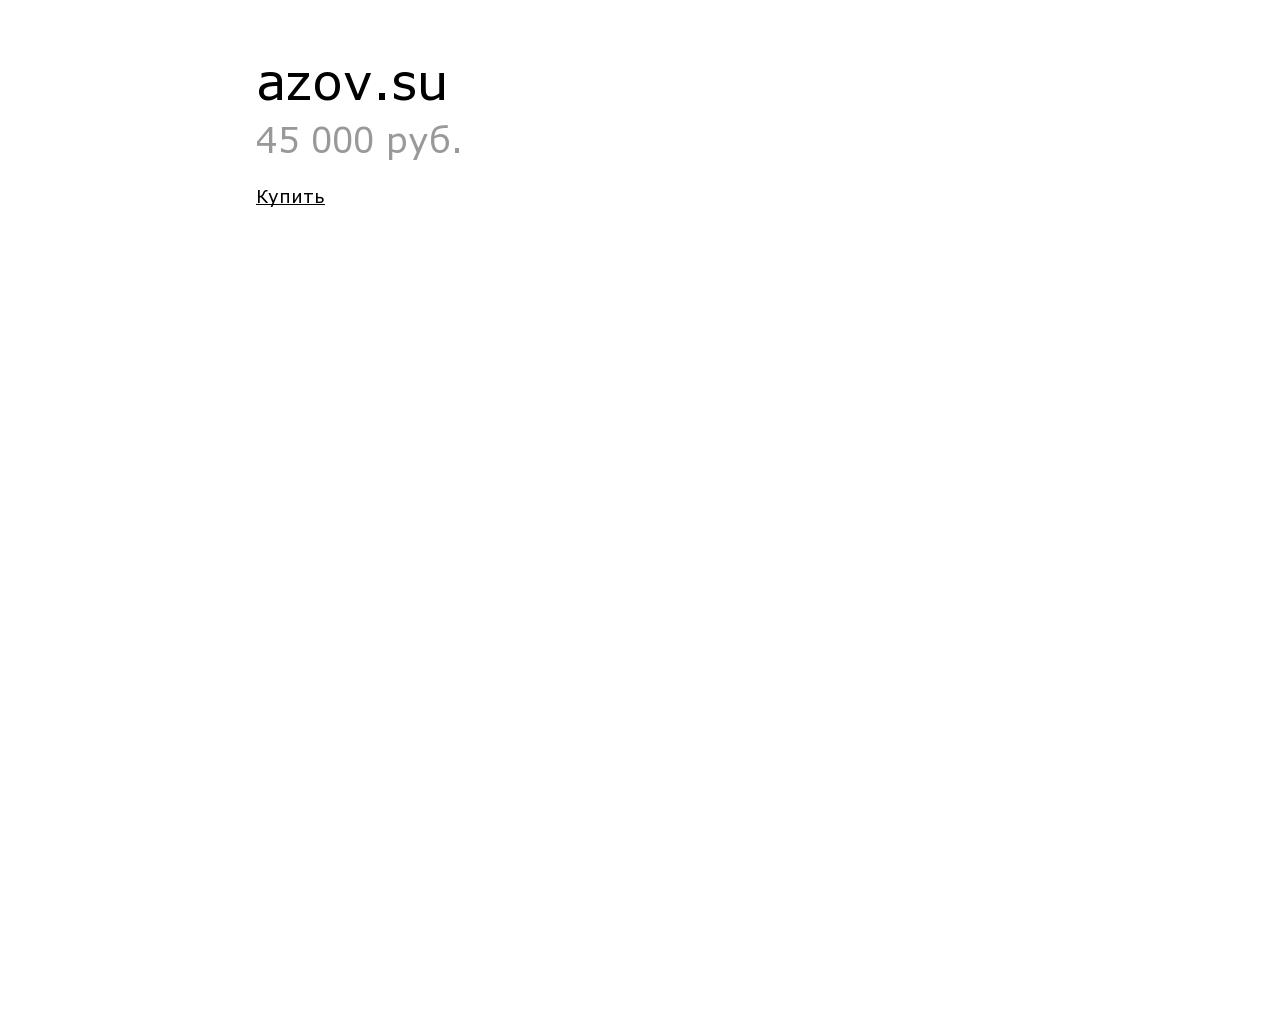 Изображение сайта azov.su в разрешении 1280x1024